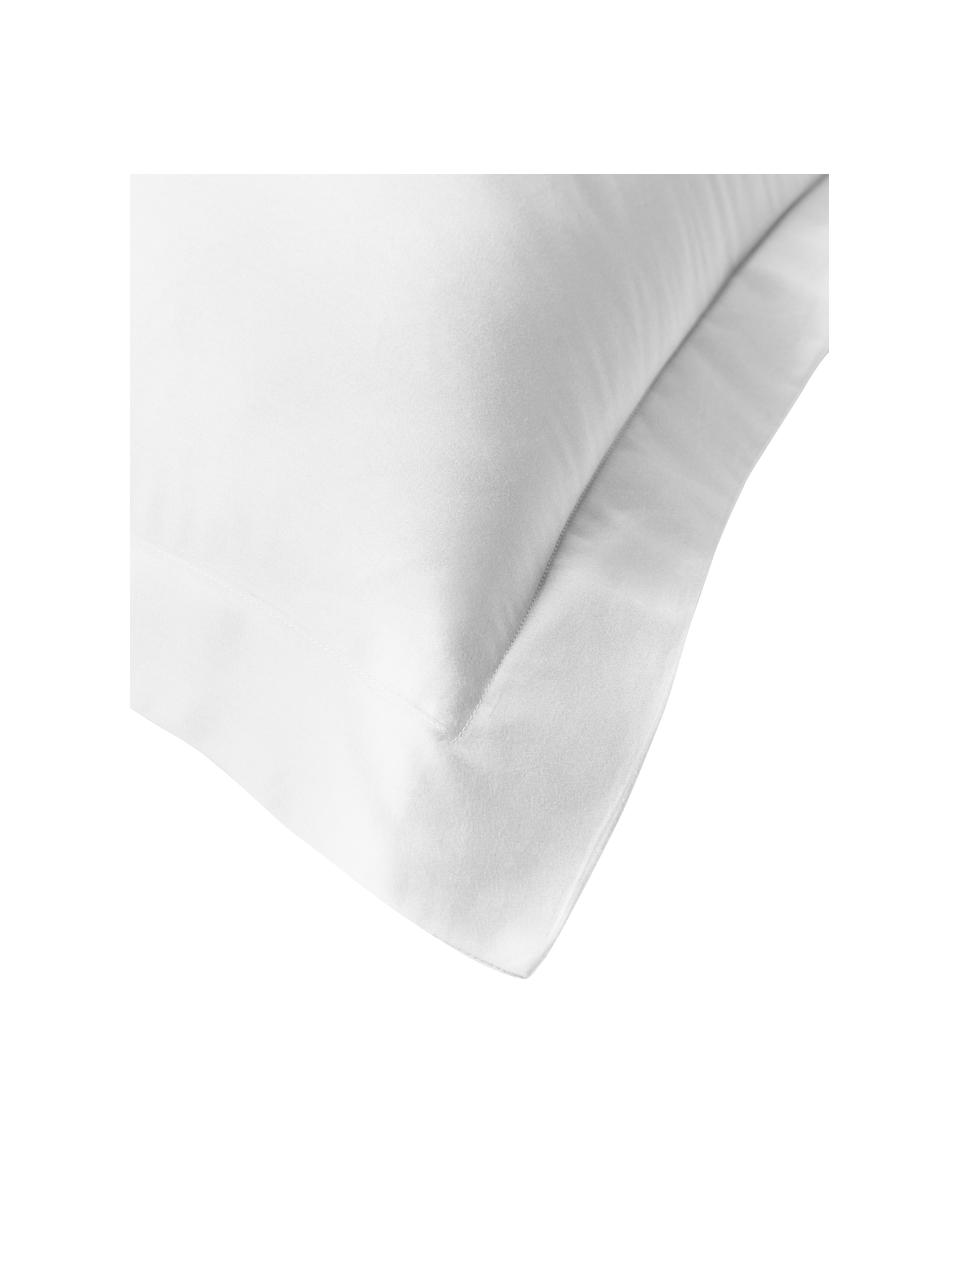 Satin-Kopfkissenbezüge Premium aus Bio-Baumwolle in Weiß mit Stehsaum, 2 Stück, Webart: Satin Fadendichte 400 TC,, Weiß, B 40 x L 80 cm